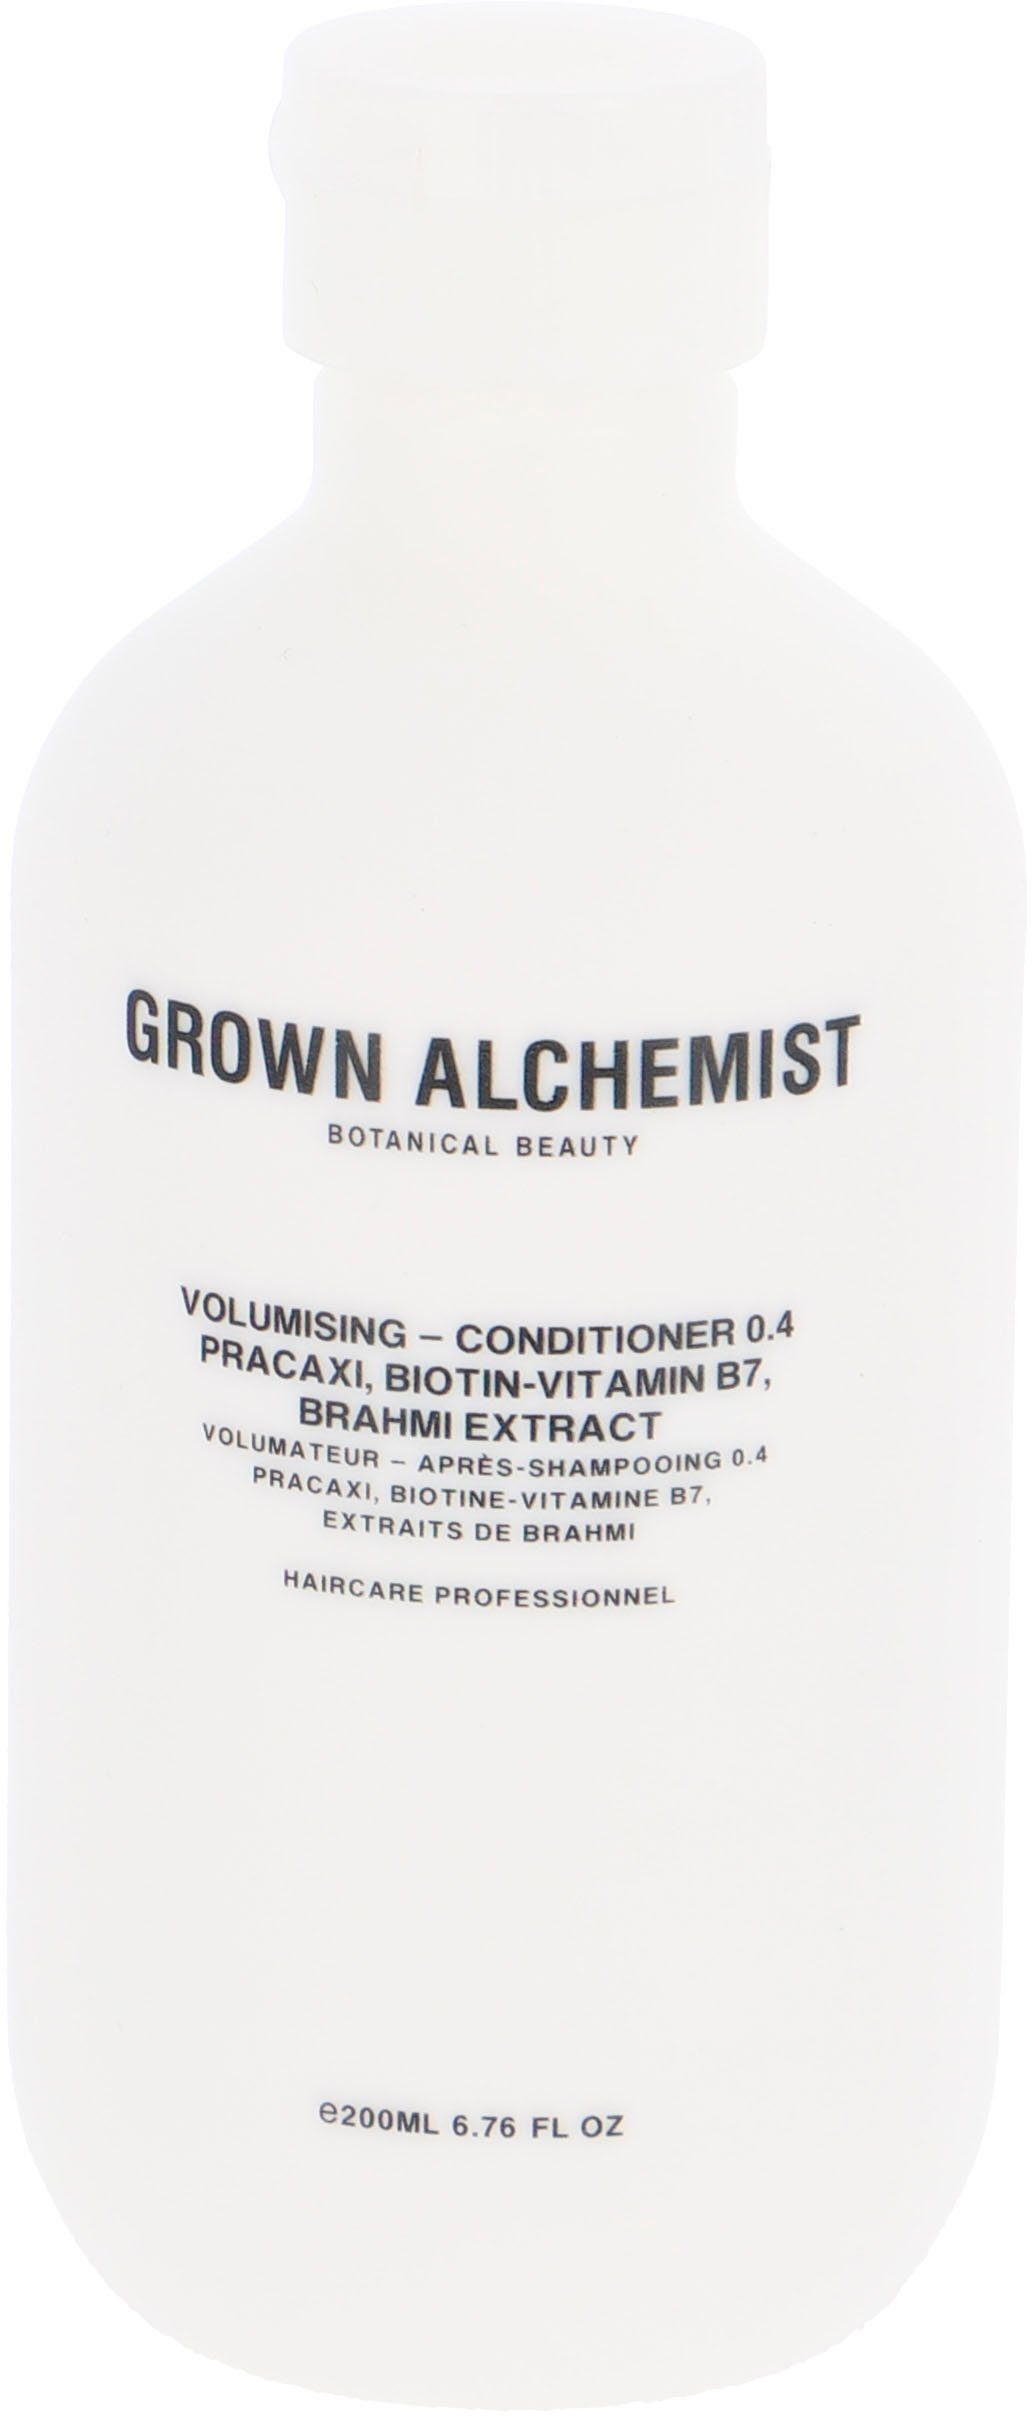 Conditioner ALCHEMIST Extract - Volumising B7, 0.4, Haarspülung Pracaxi, GROWN Brahmi Biotin-Vitamin